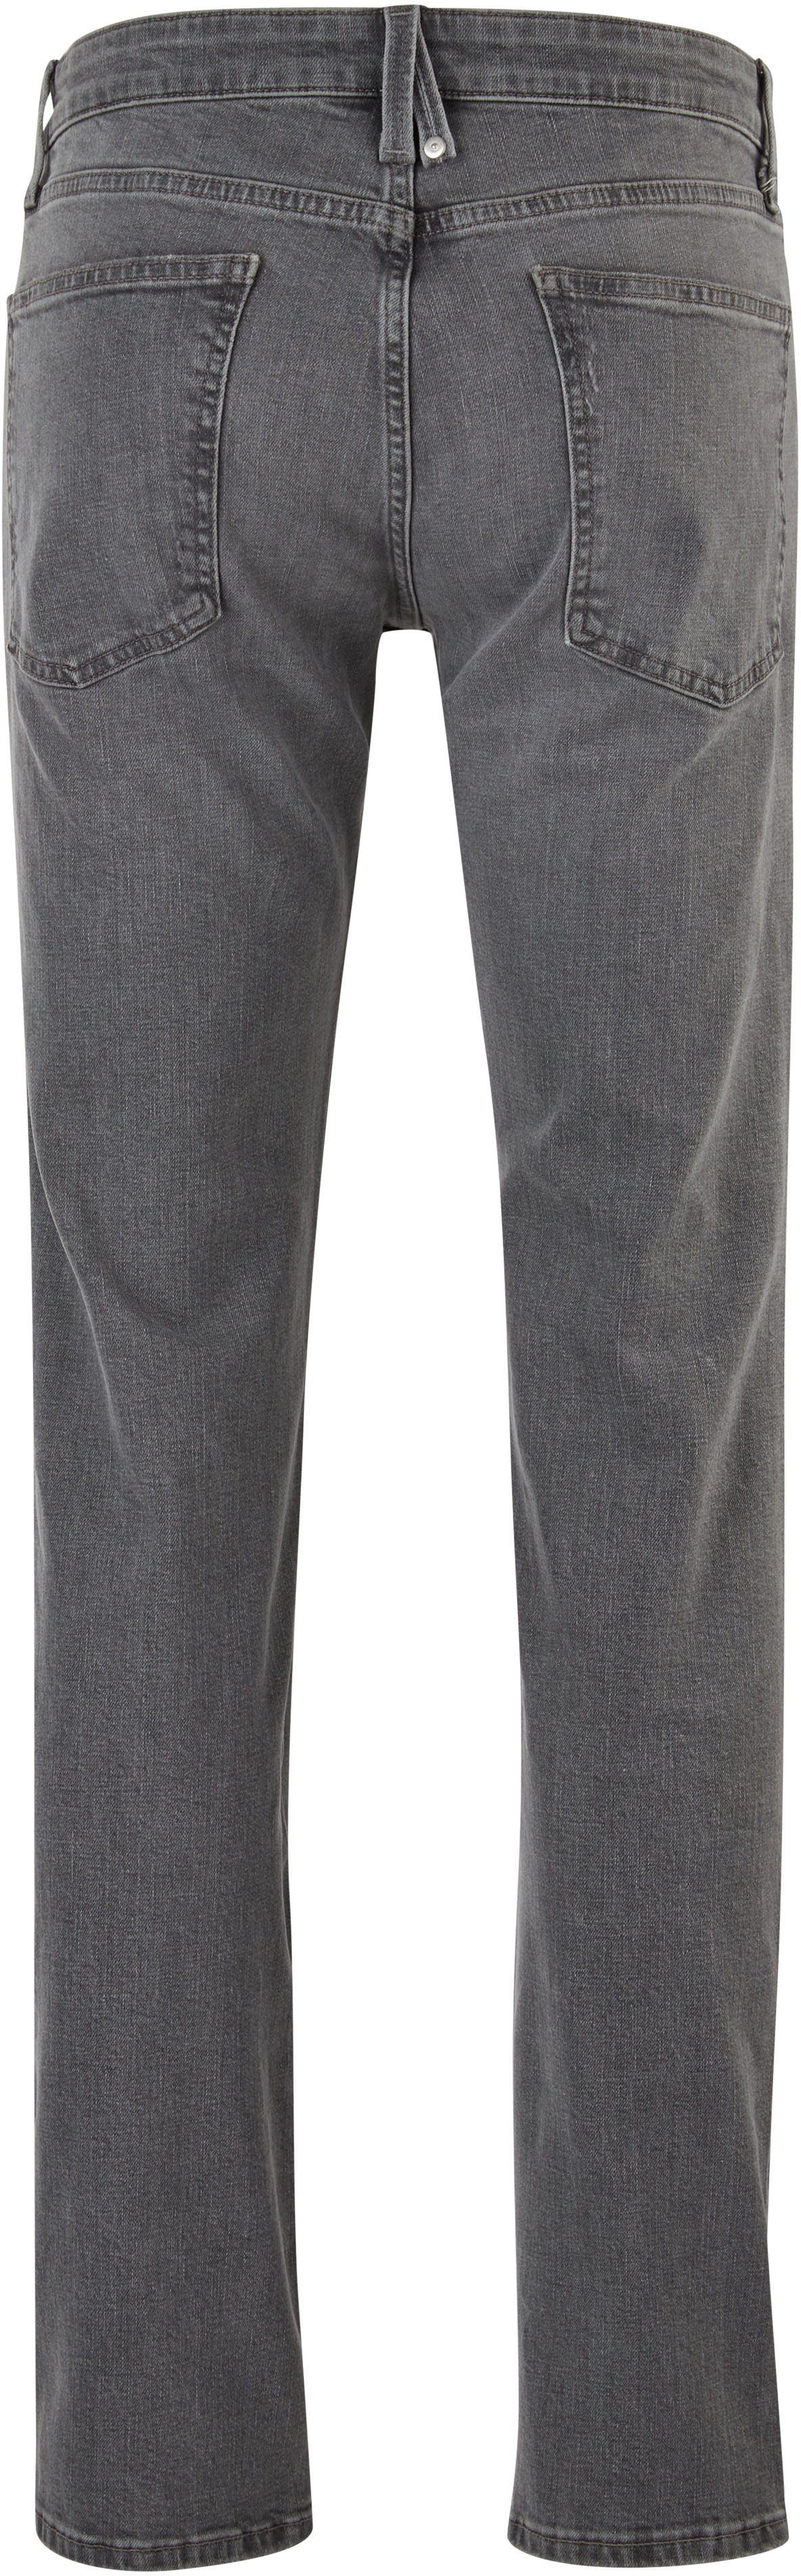 s.Oliver 5-Pocket-Jeans mit authentischer Waschung stein-grau